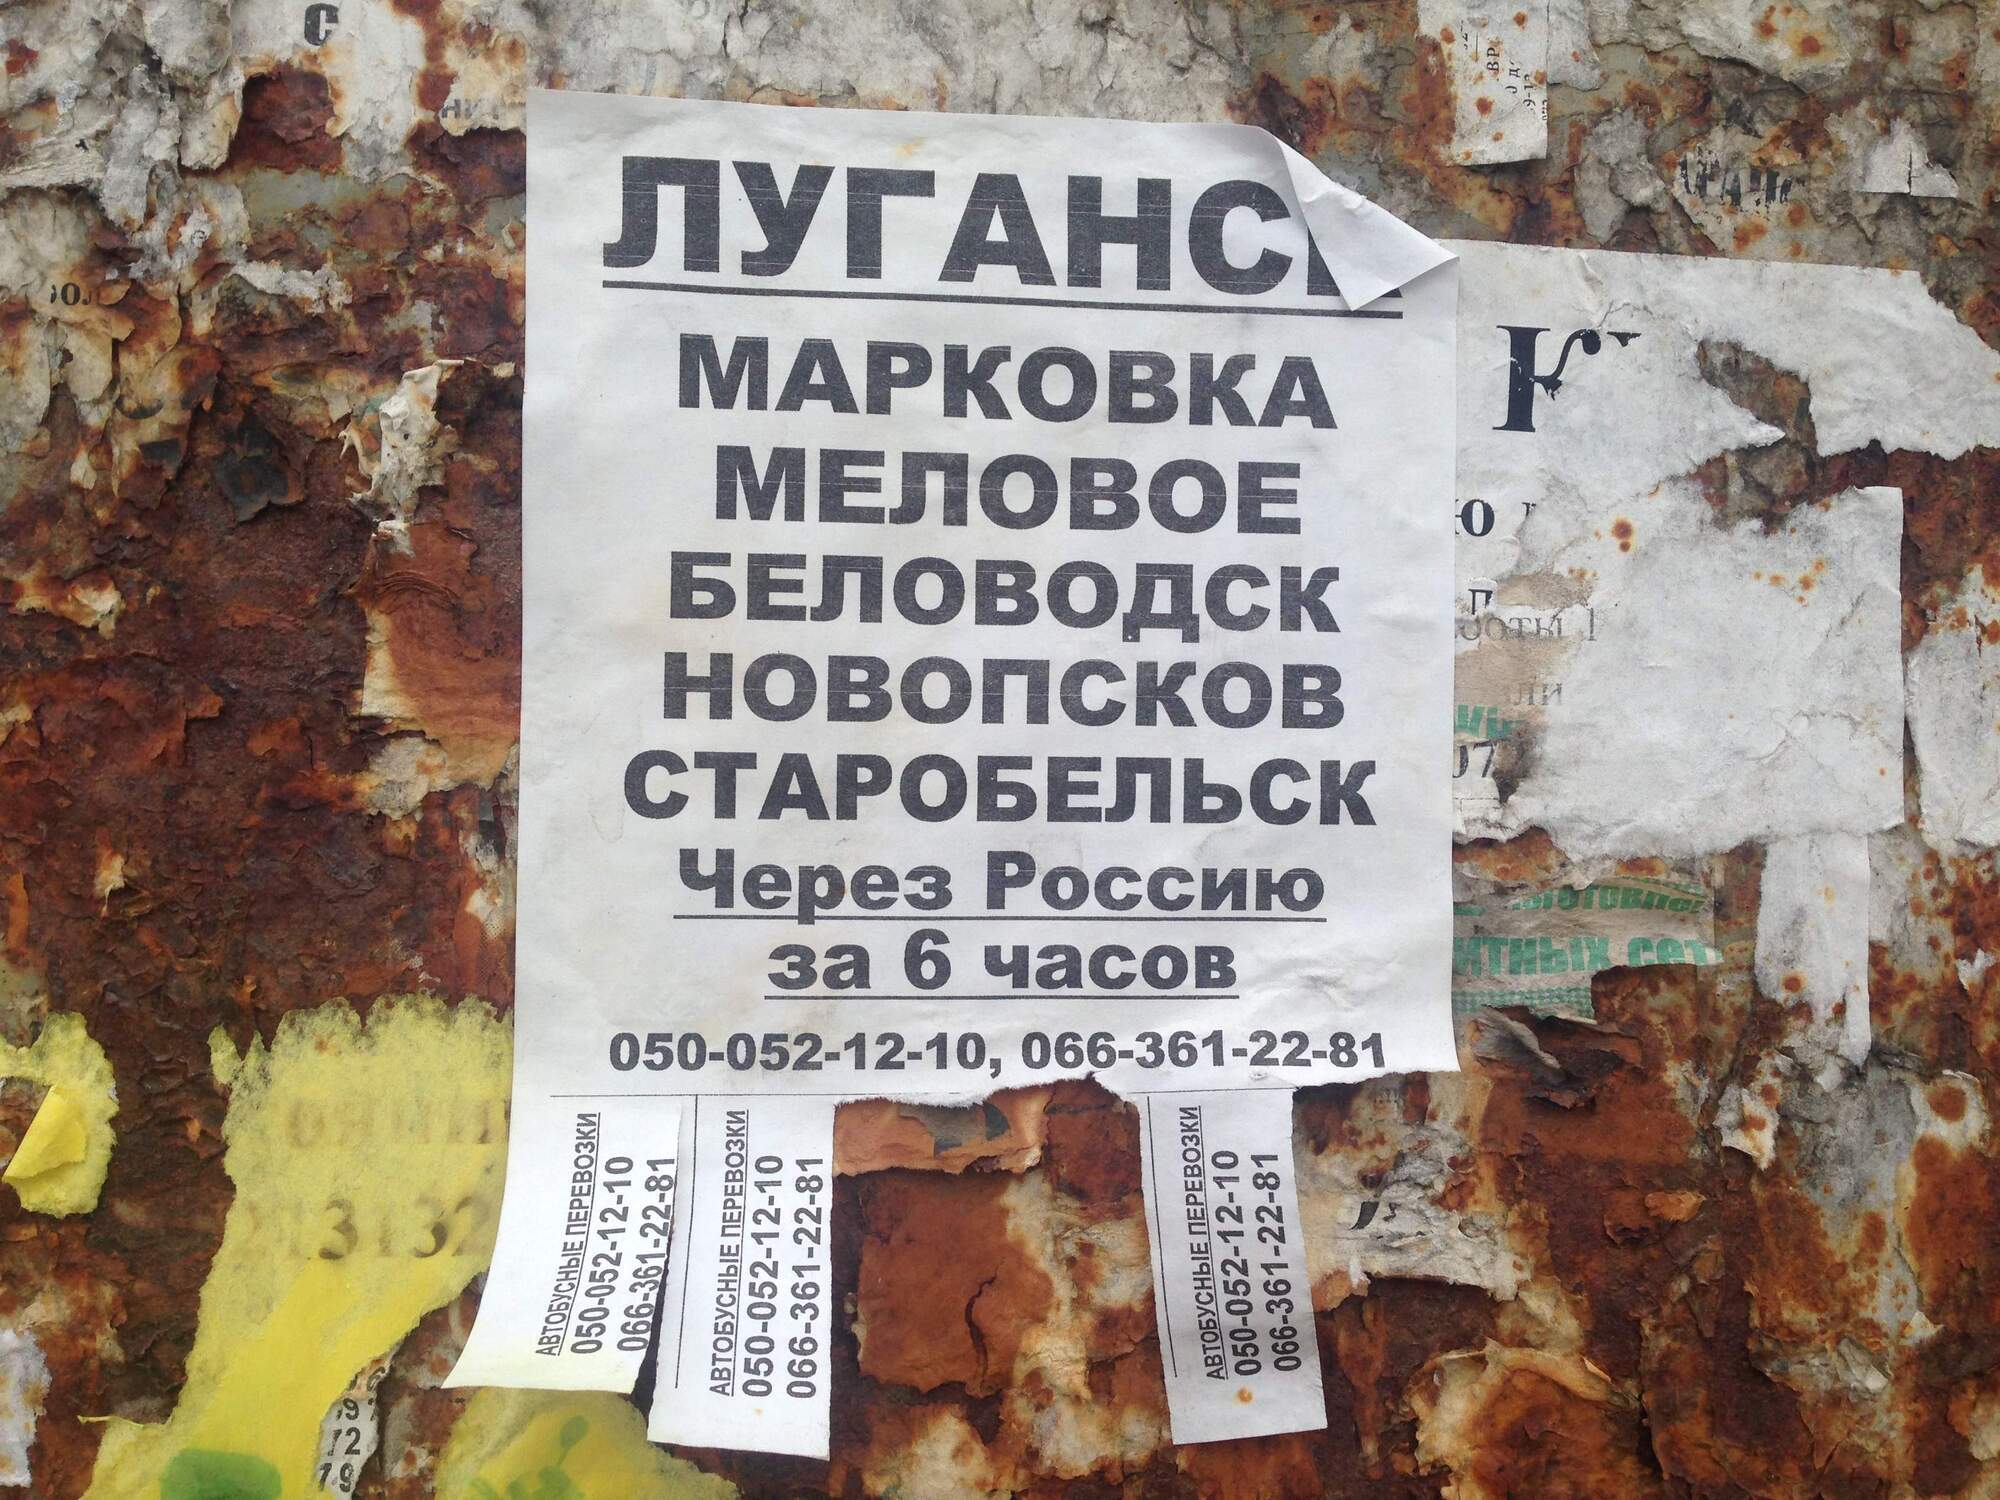 Реклама перевозок в окупированном Луганске